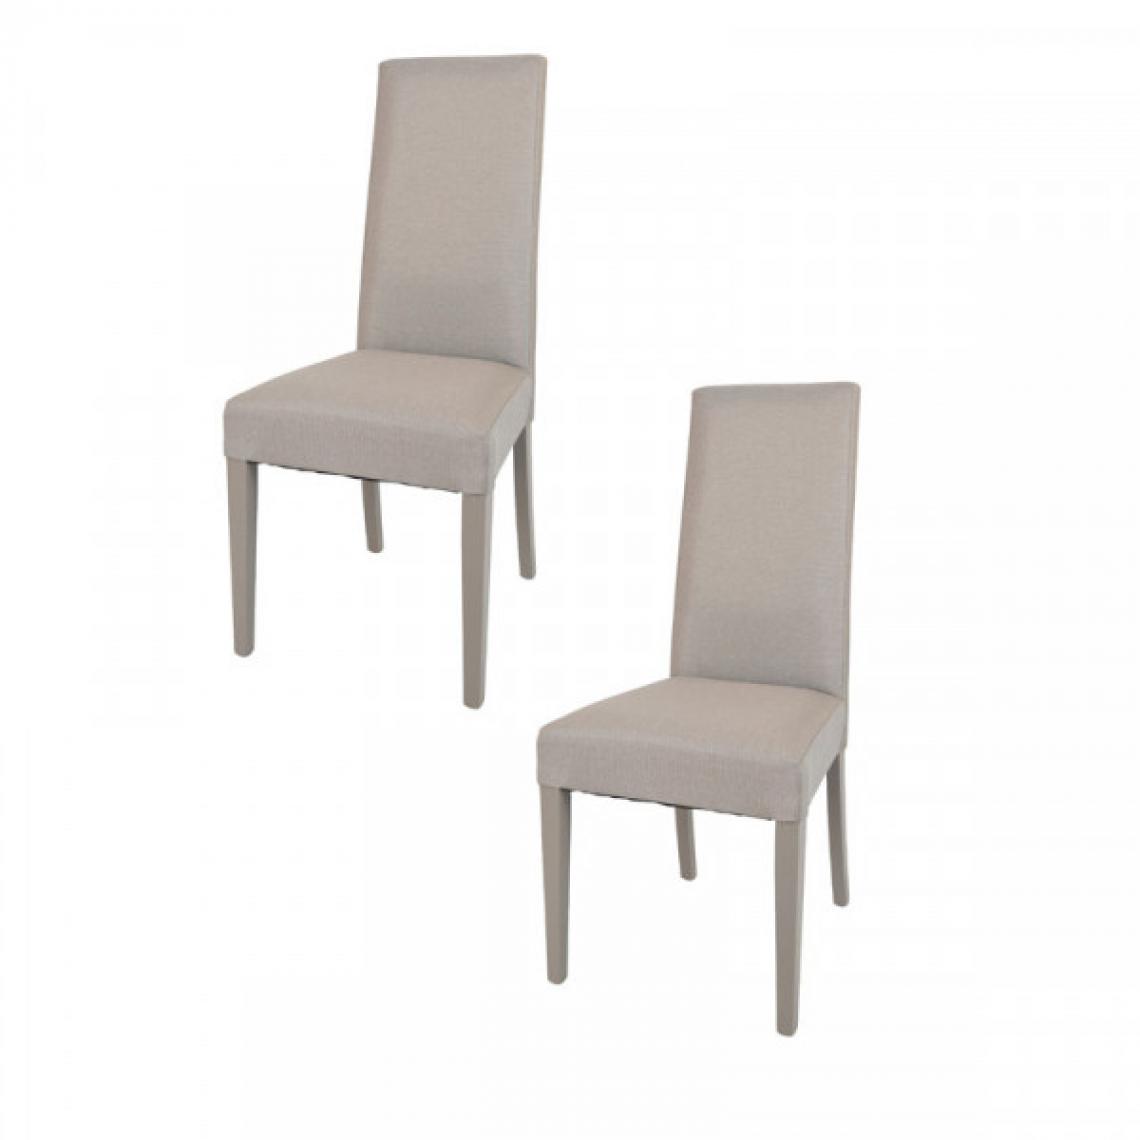 Dansmamaison - Duo de chaises tissu Taupe - PISE - L 54 x l 46 x H 99 cm - Chaises